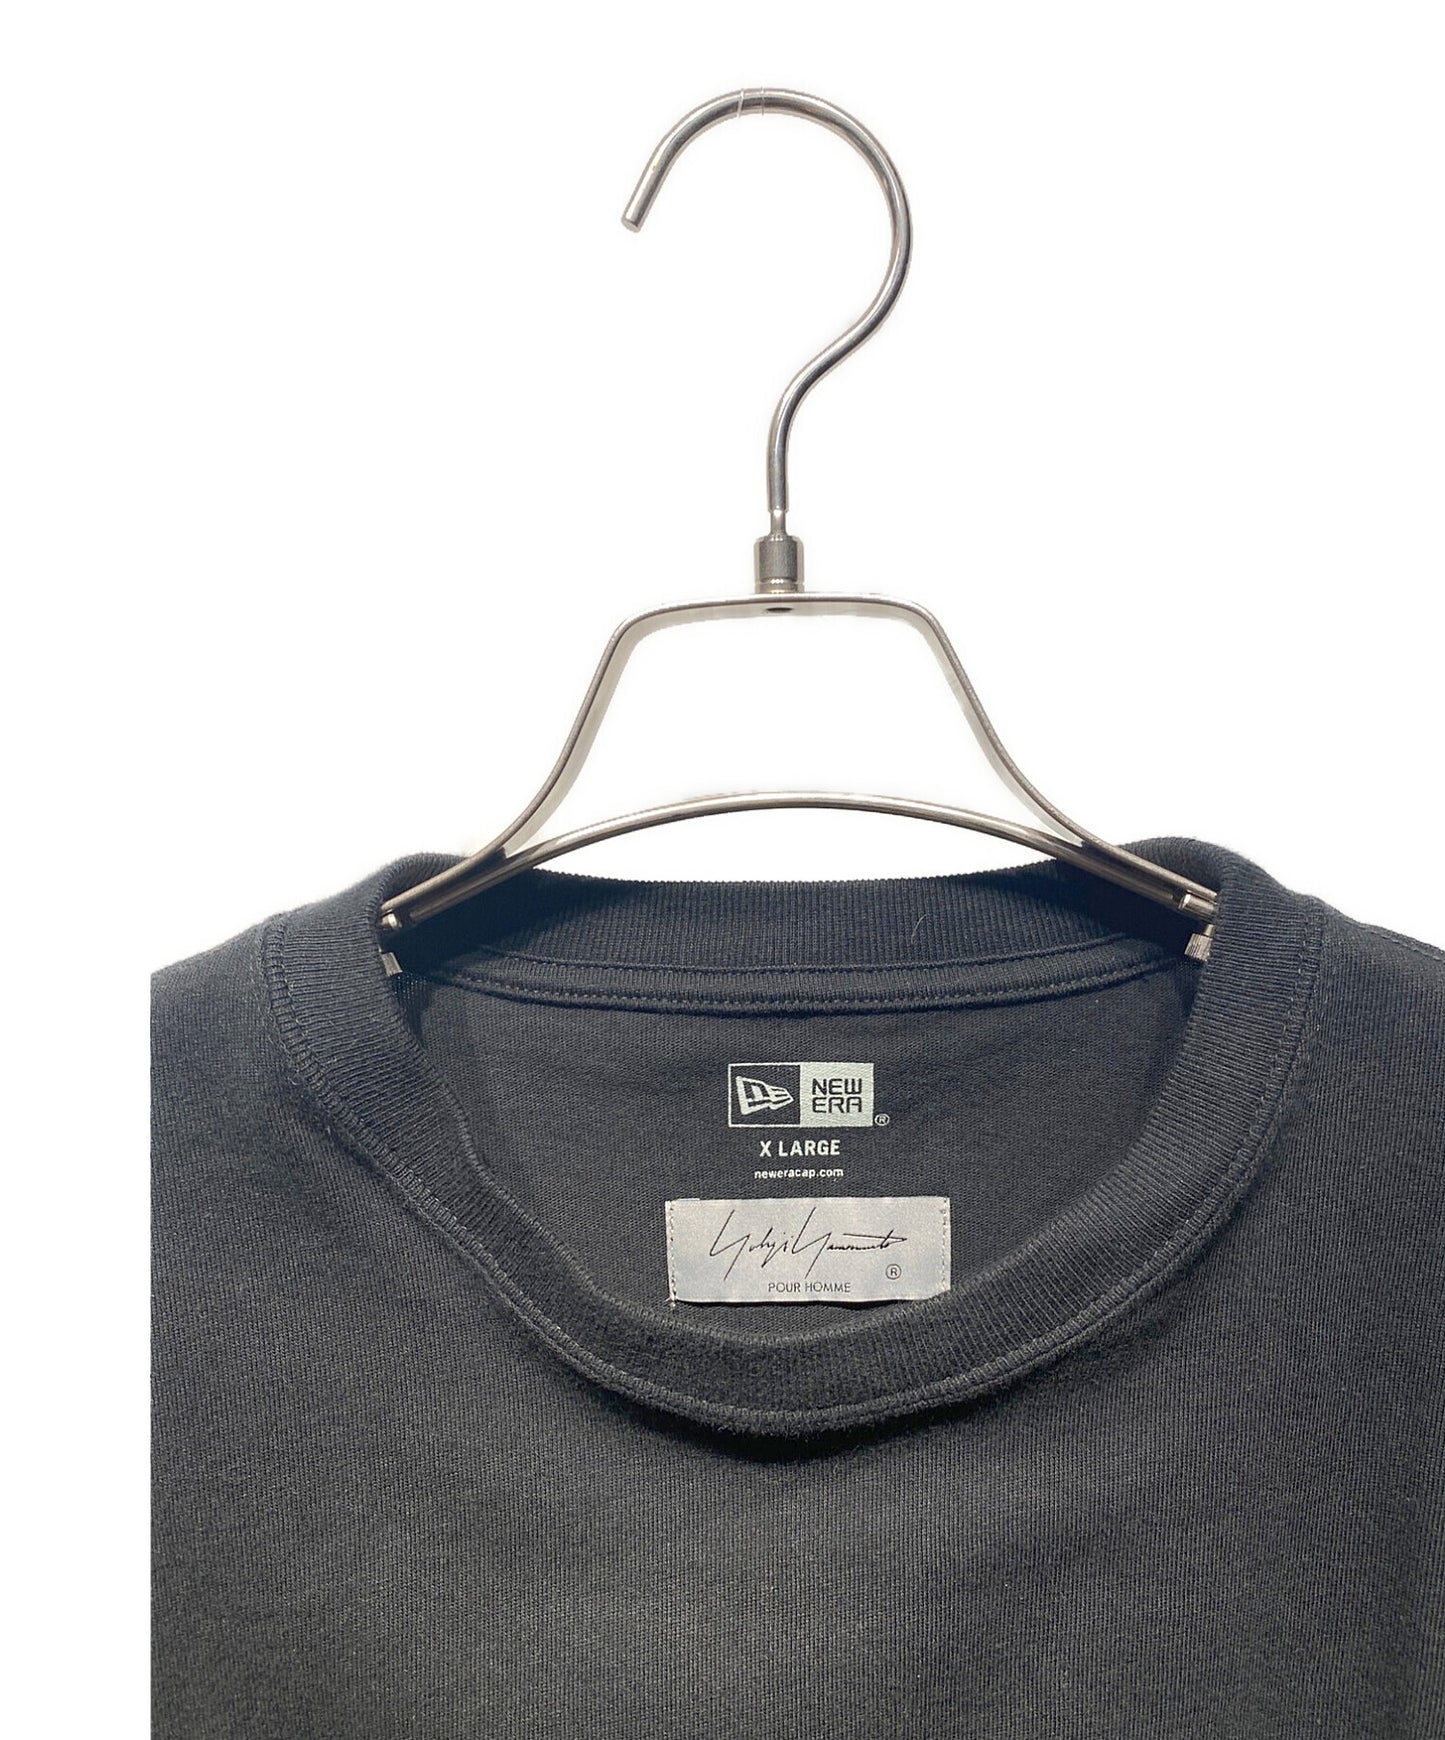 Yohji Yamamoto背部印刷T恤HD-T97-082